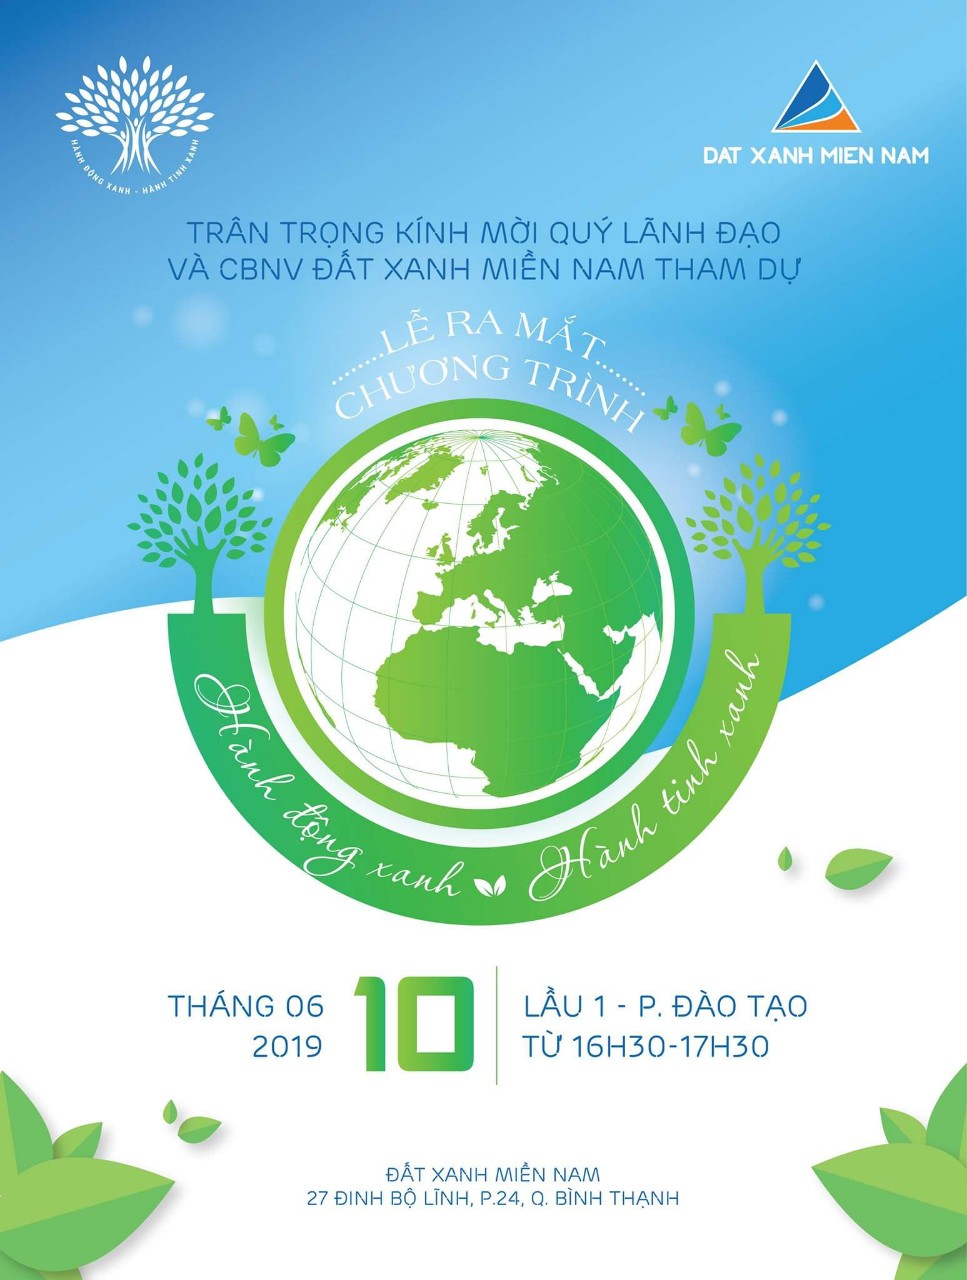 Hành động xanh – Hành tinh xanh: ĐXMN phát động chung tay bảo vệ môi trường